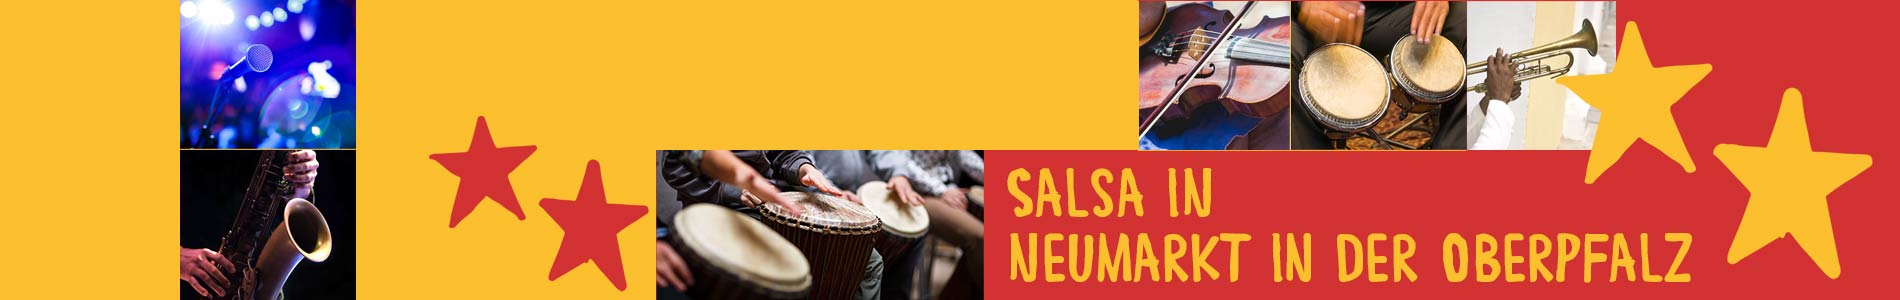 Salsa in Neumarkt in der Oberpfalz – Salsa lernen und tanzen, Tanzkurse, Partys, Veranstaltungen